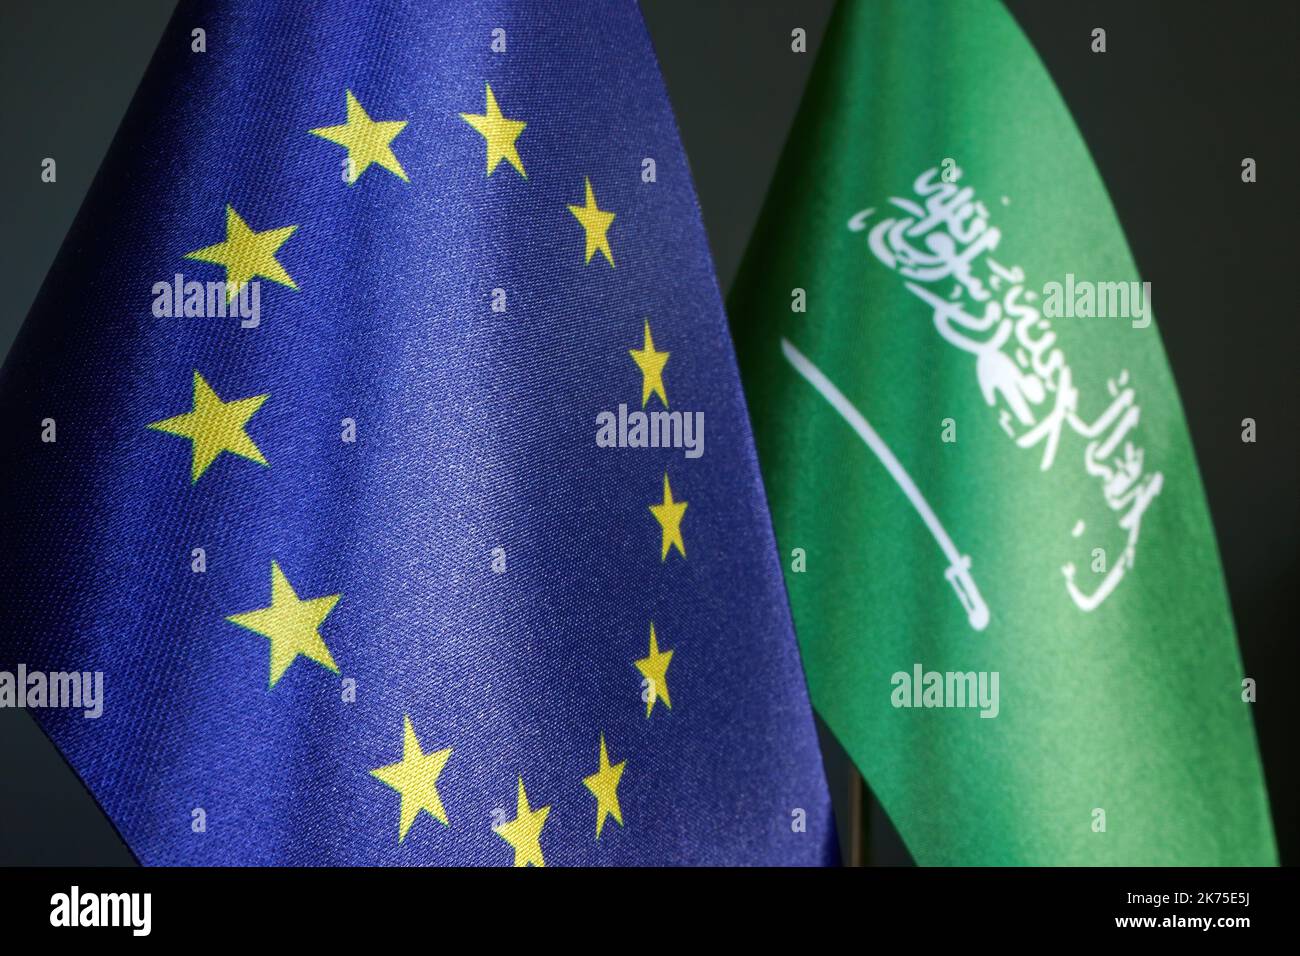 La bandera de la Unión Europea y de Arabia Saudita como concepto de diplomacia. Foto de stock